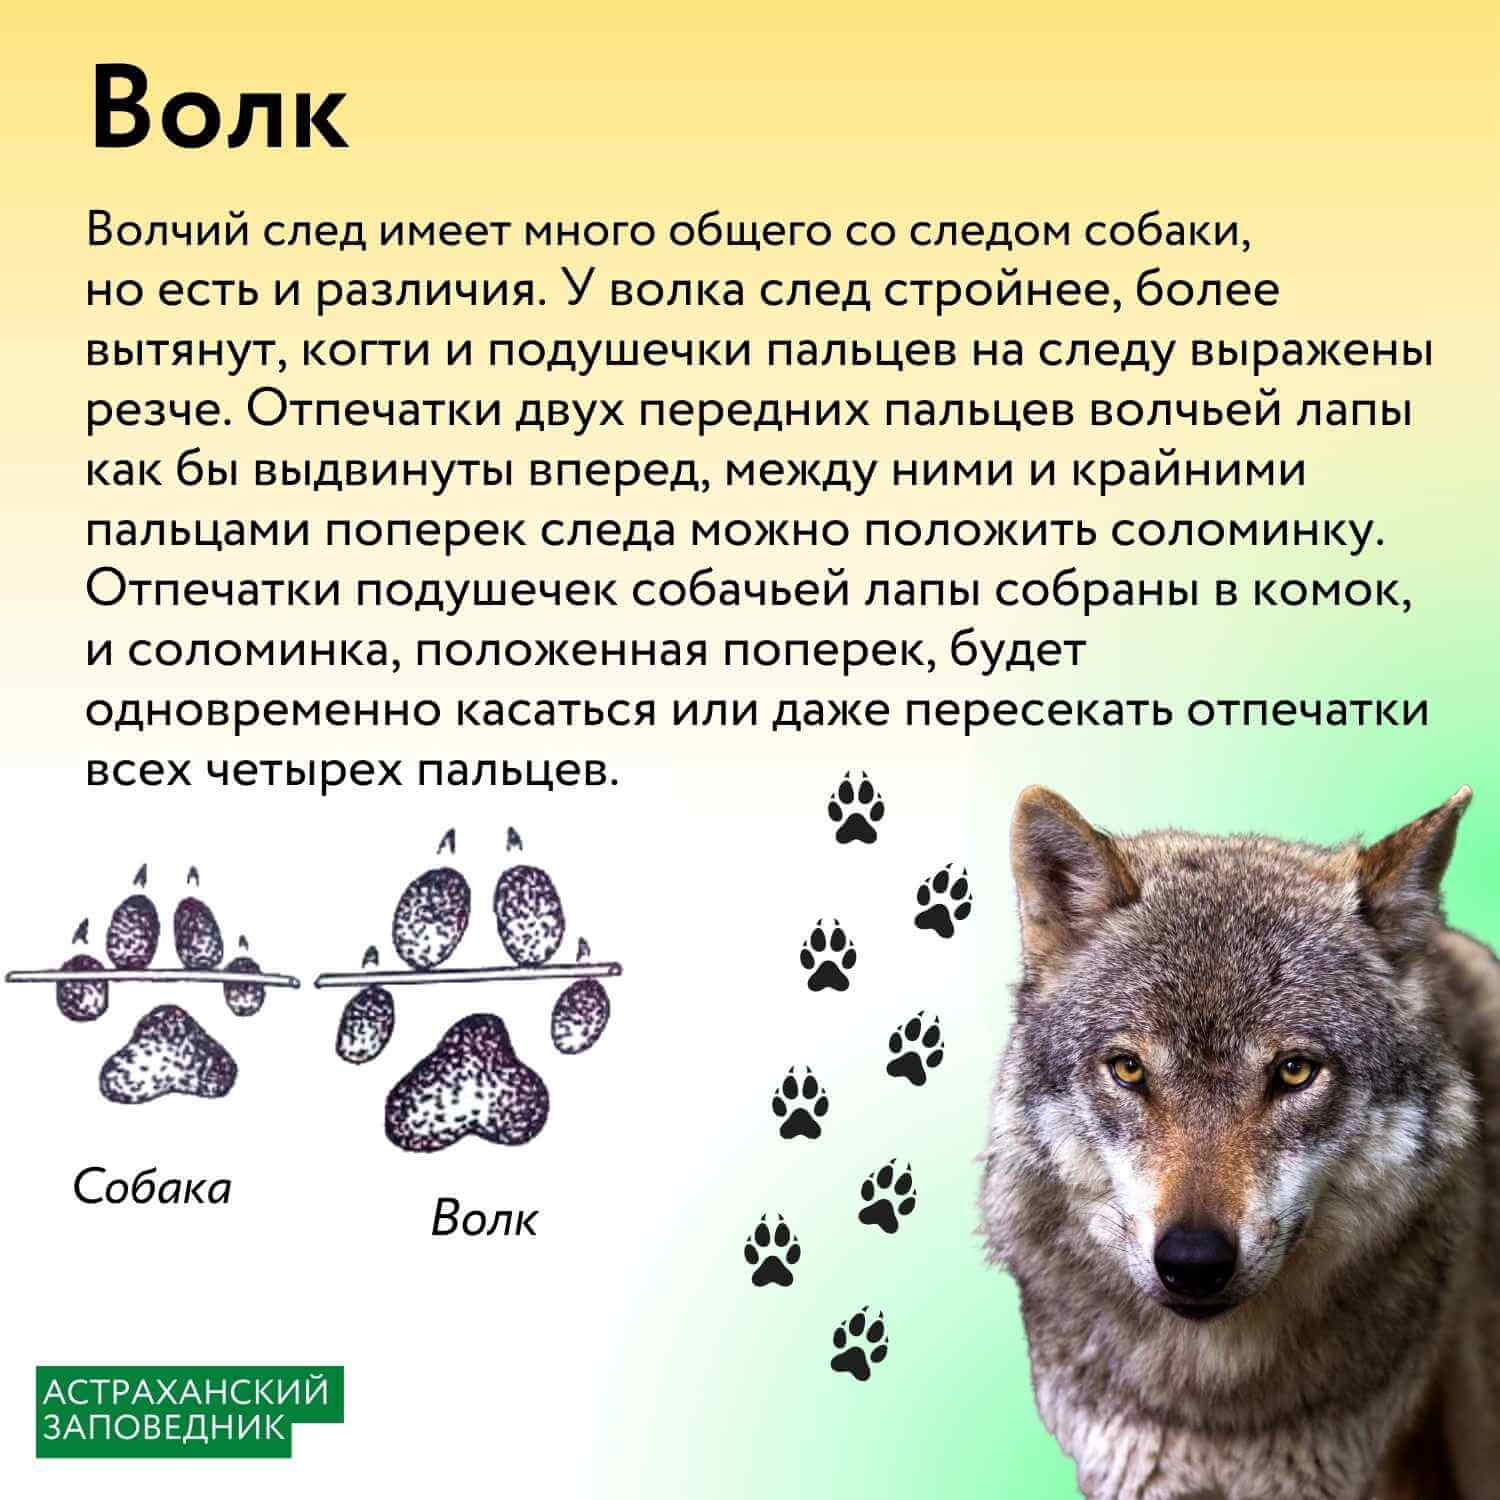 Инфографика: следы млекопитающих – Астраханский биосферный заповедник